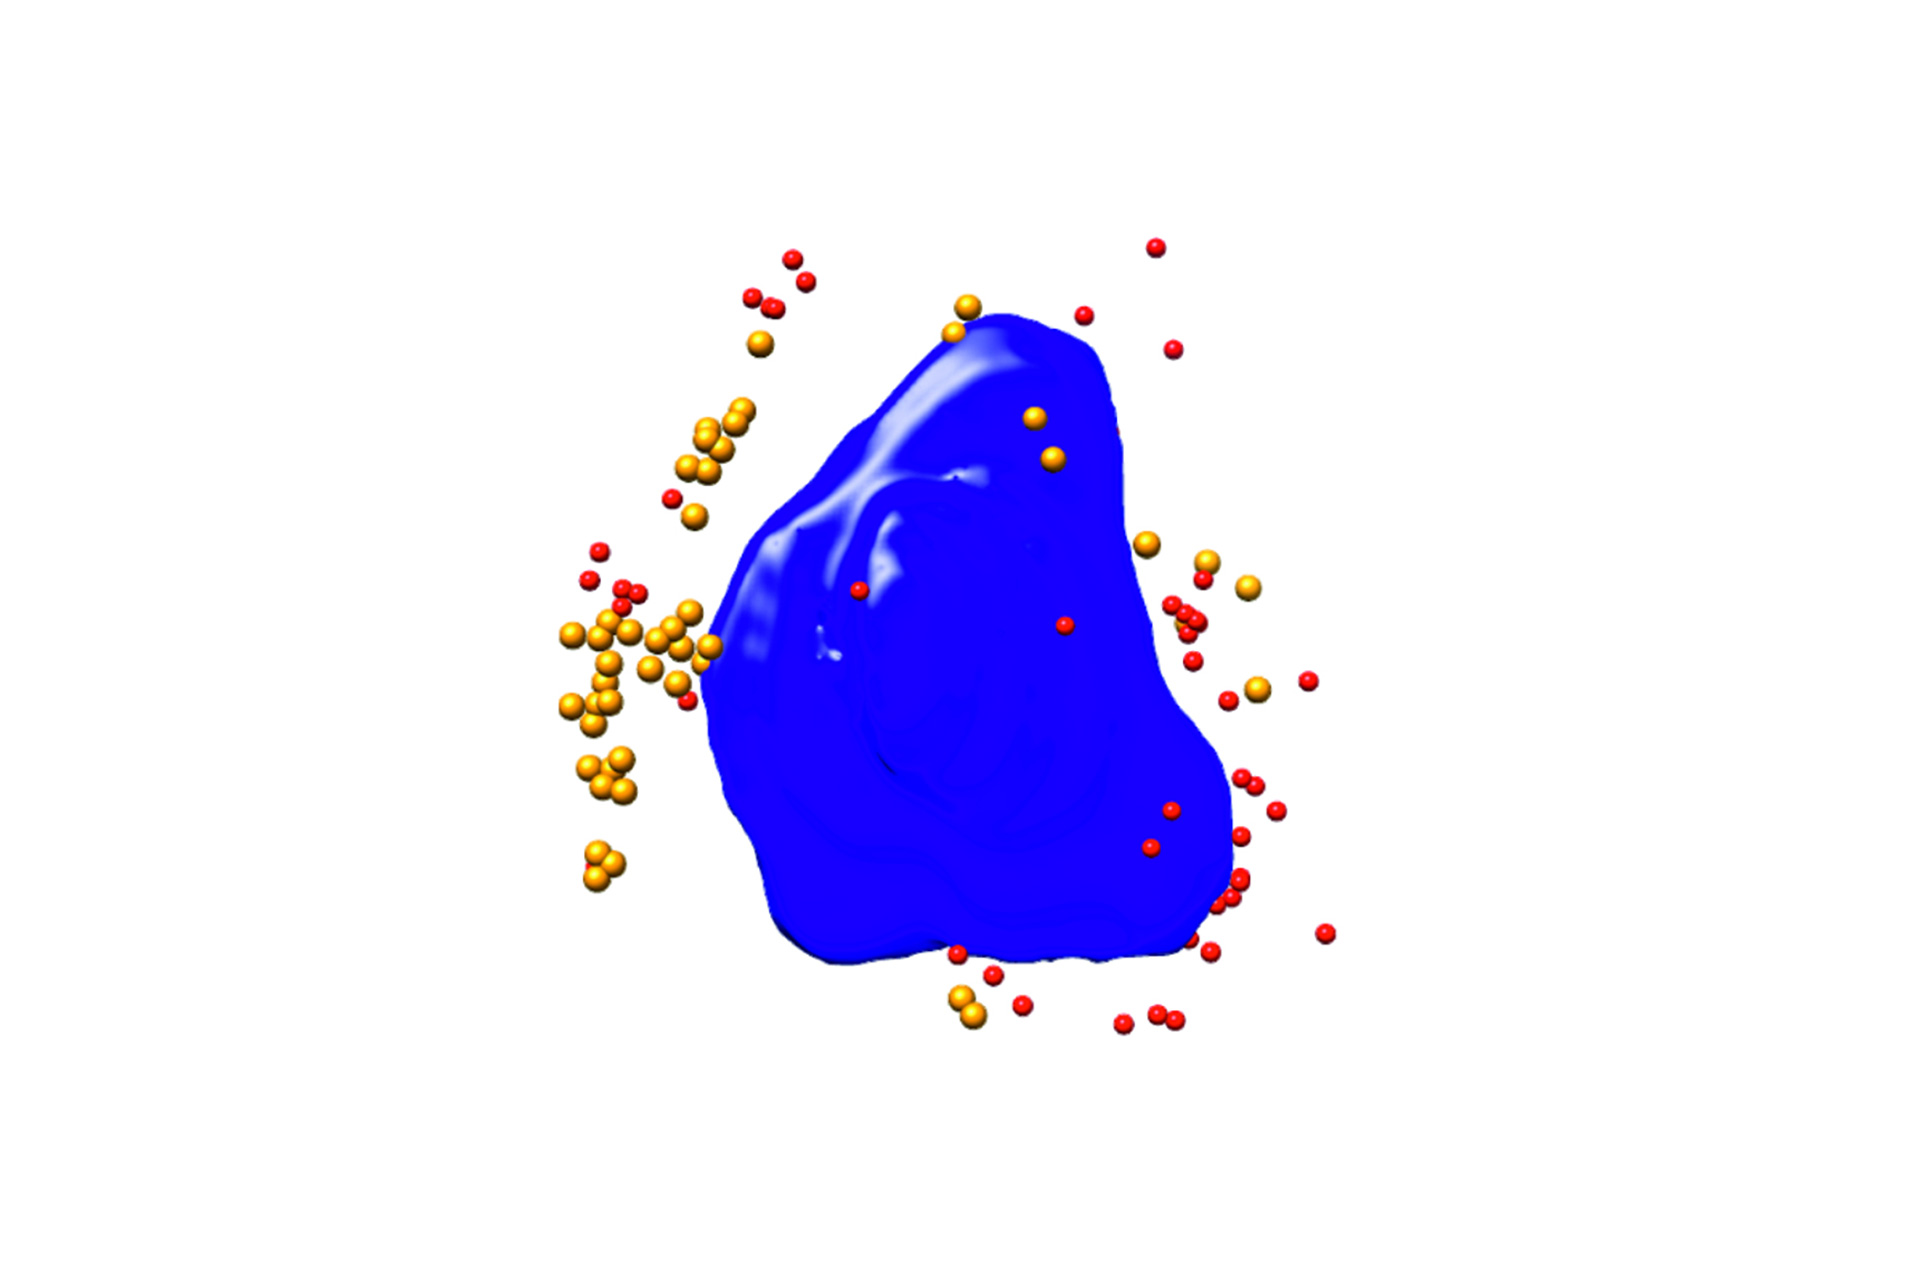 Rendu 3D segmenté d'une cellule PtK2 infectée par un virus. Bleu : noyau, rouge/orange : particules virales ; largeur de la cellule appr. 10 µm ; Xradia 825 Synchrotron. Images fournies avec l'aimable autorisation de : F.J. Chichon, CNB-CSIC et ALBA Synchrotron (Espagne). 